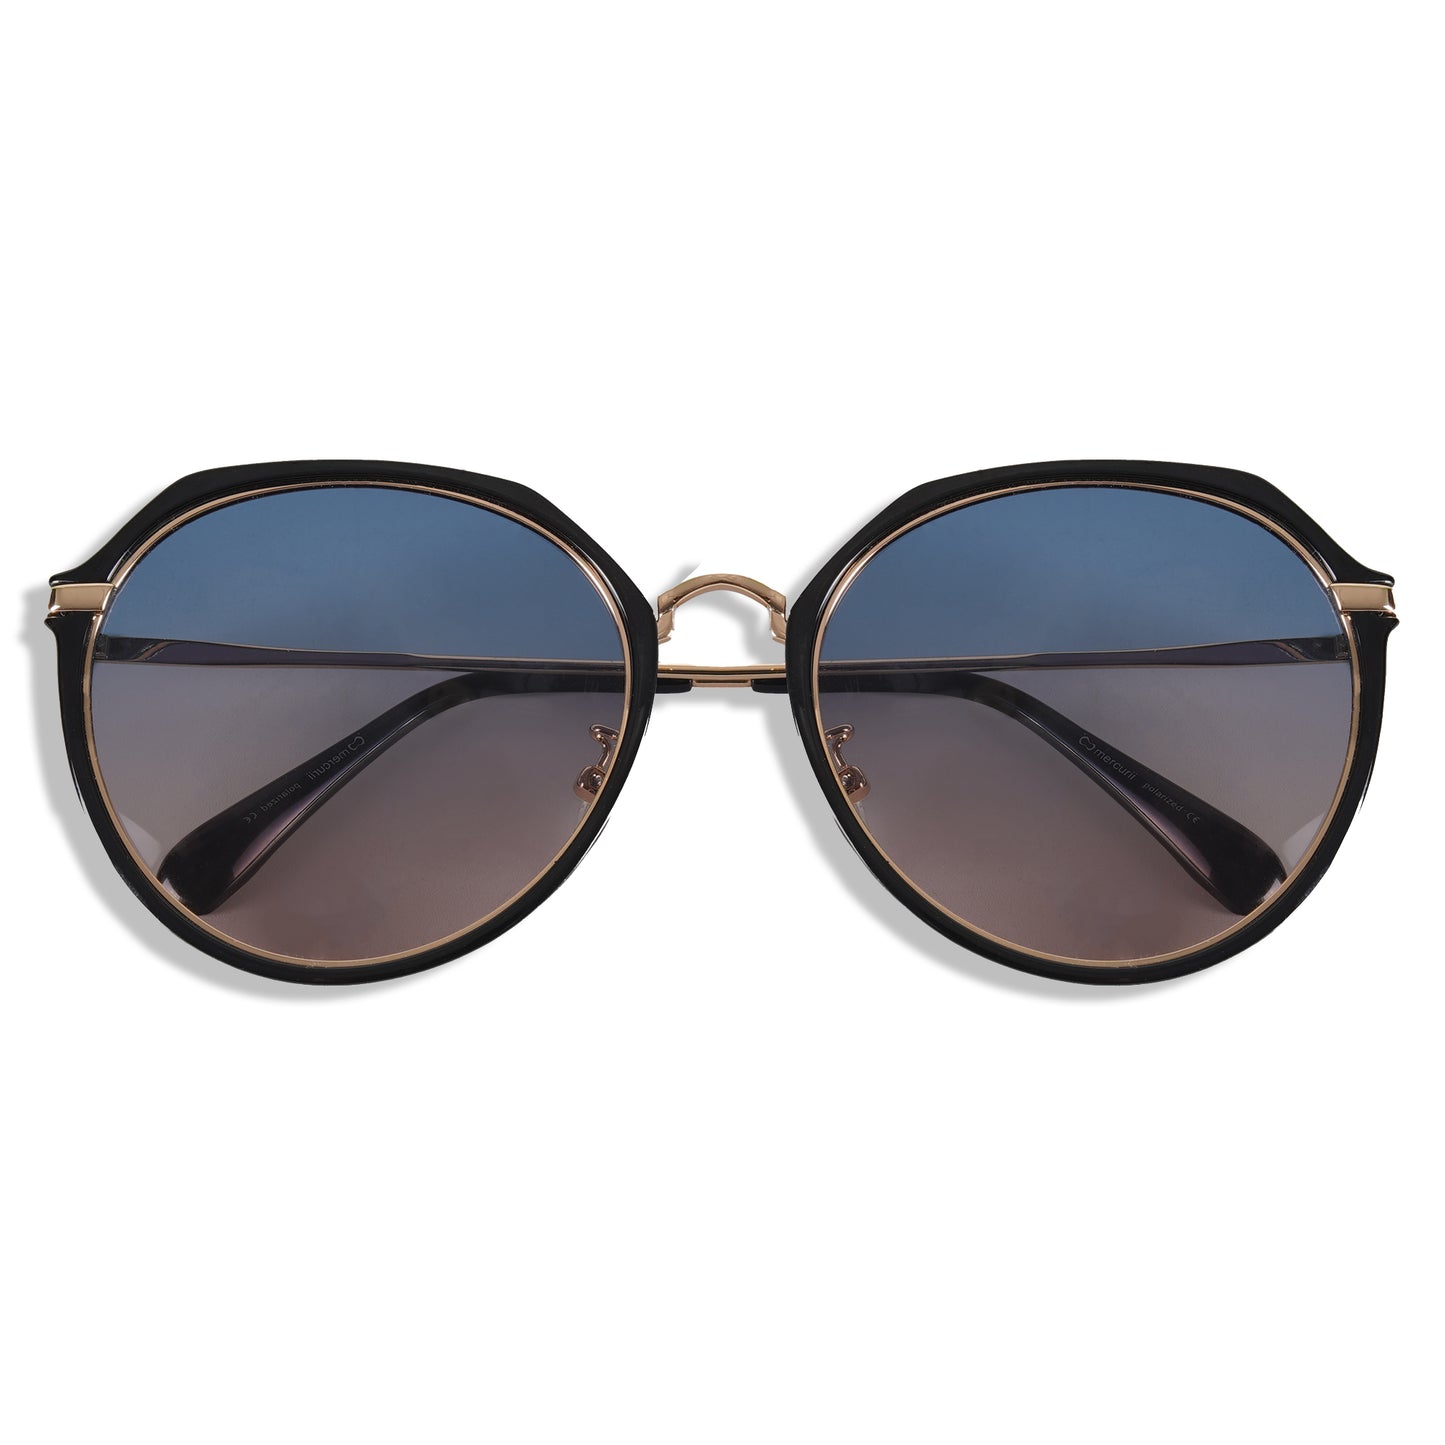 Loscomun Polarized Black Gold Round Sunglasses